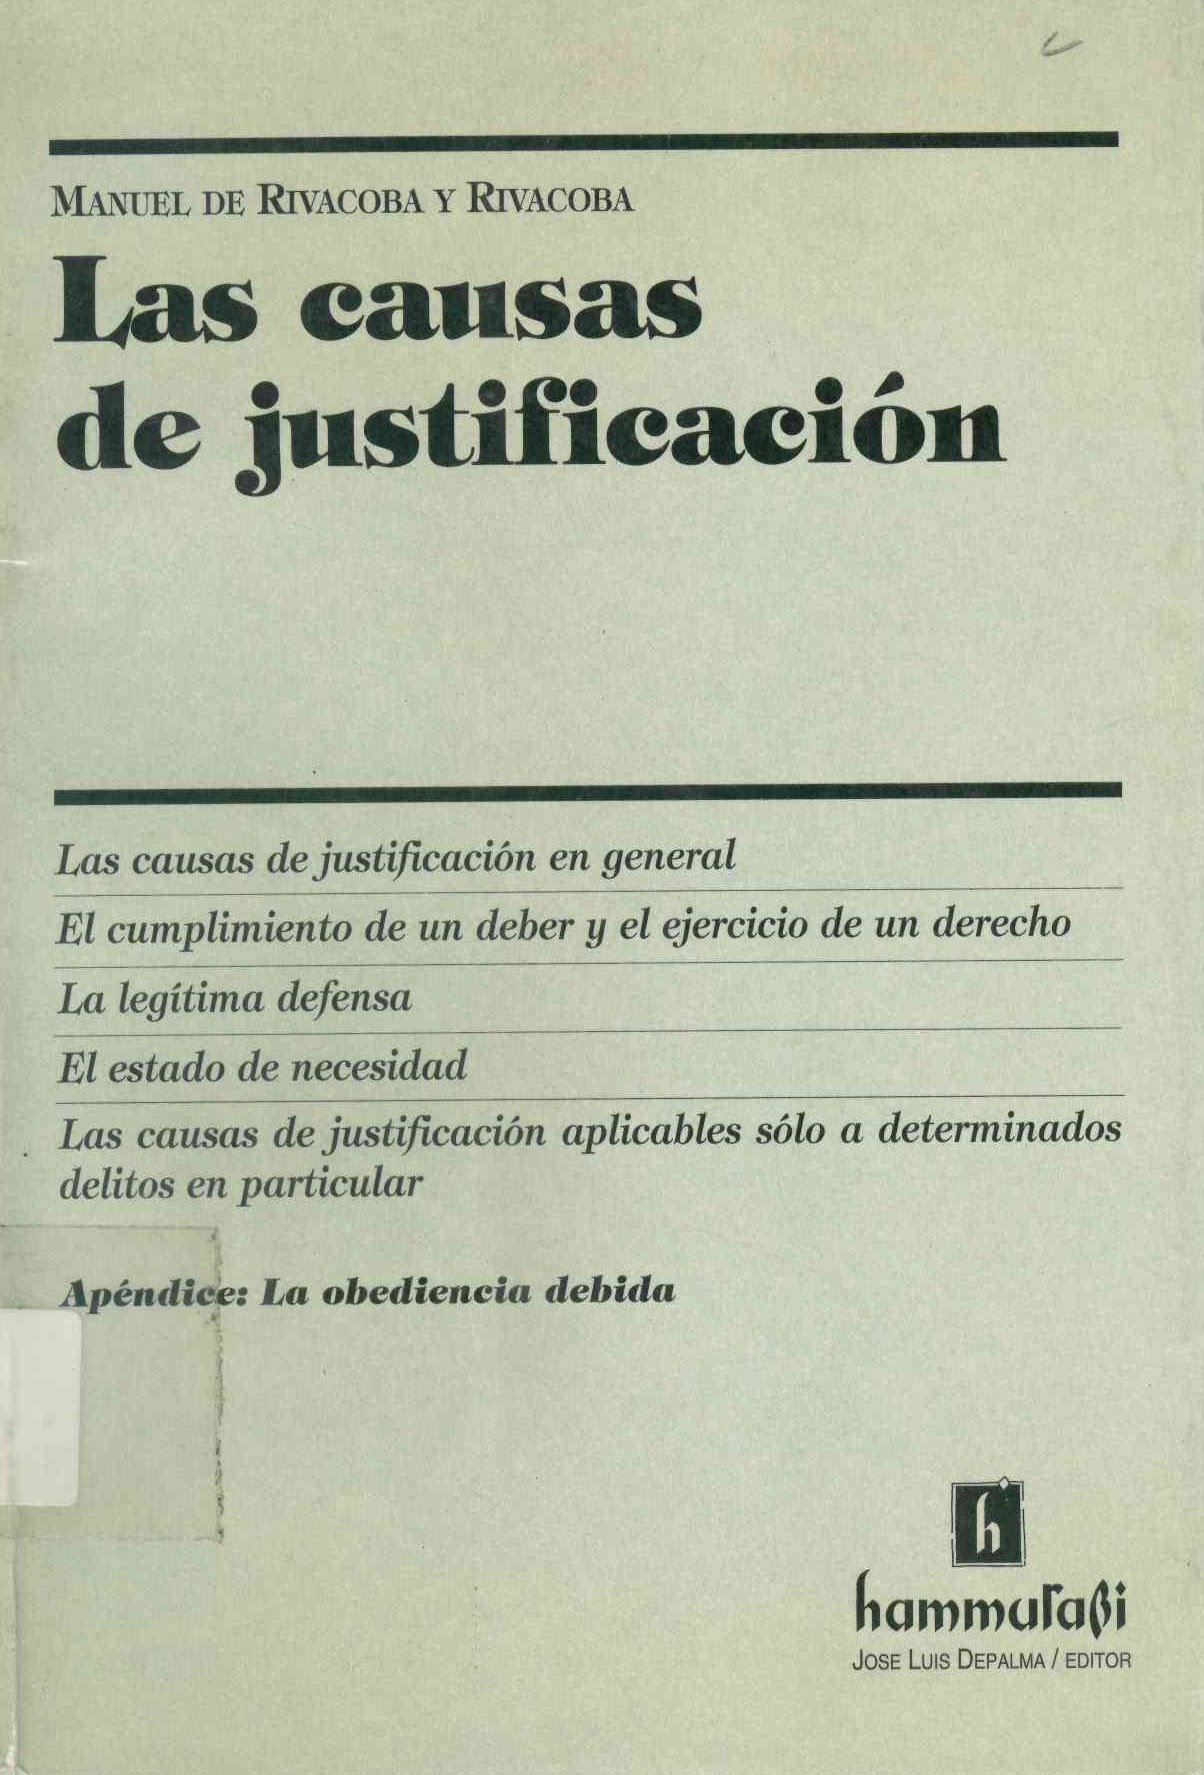 Las causas de justificación : estudio jurisprudencial